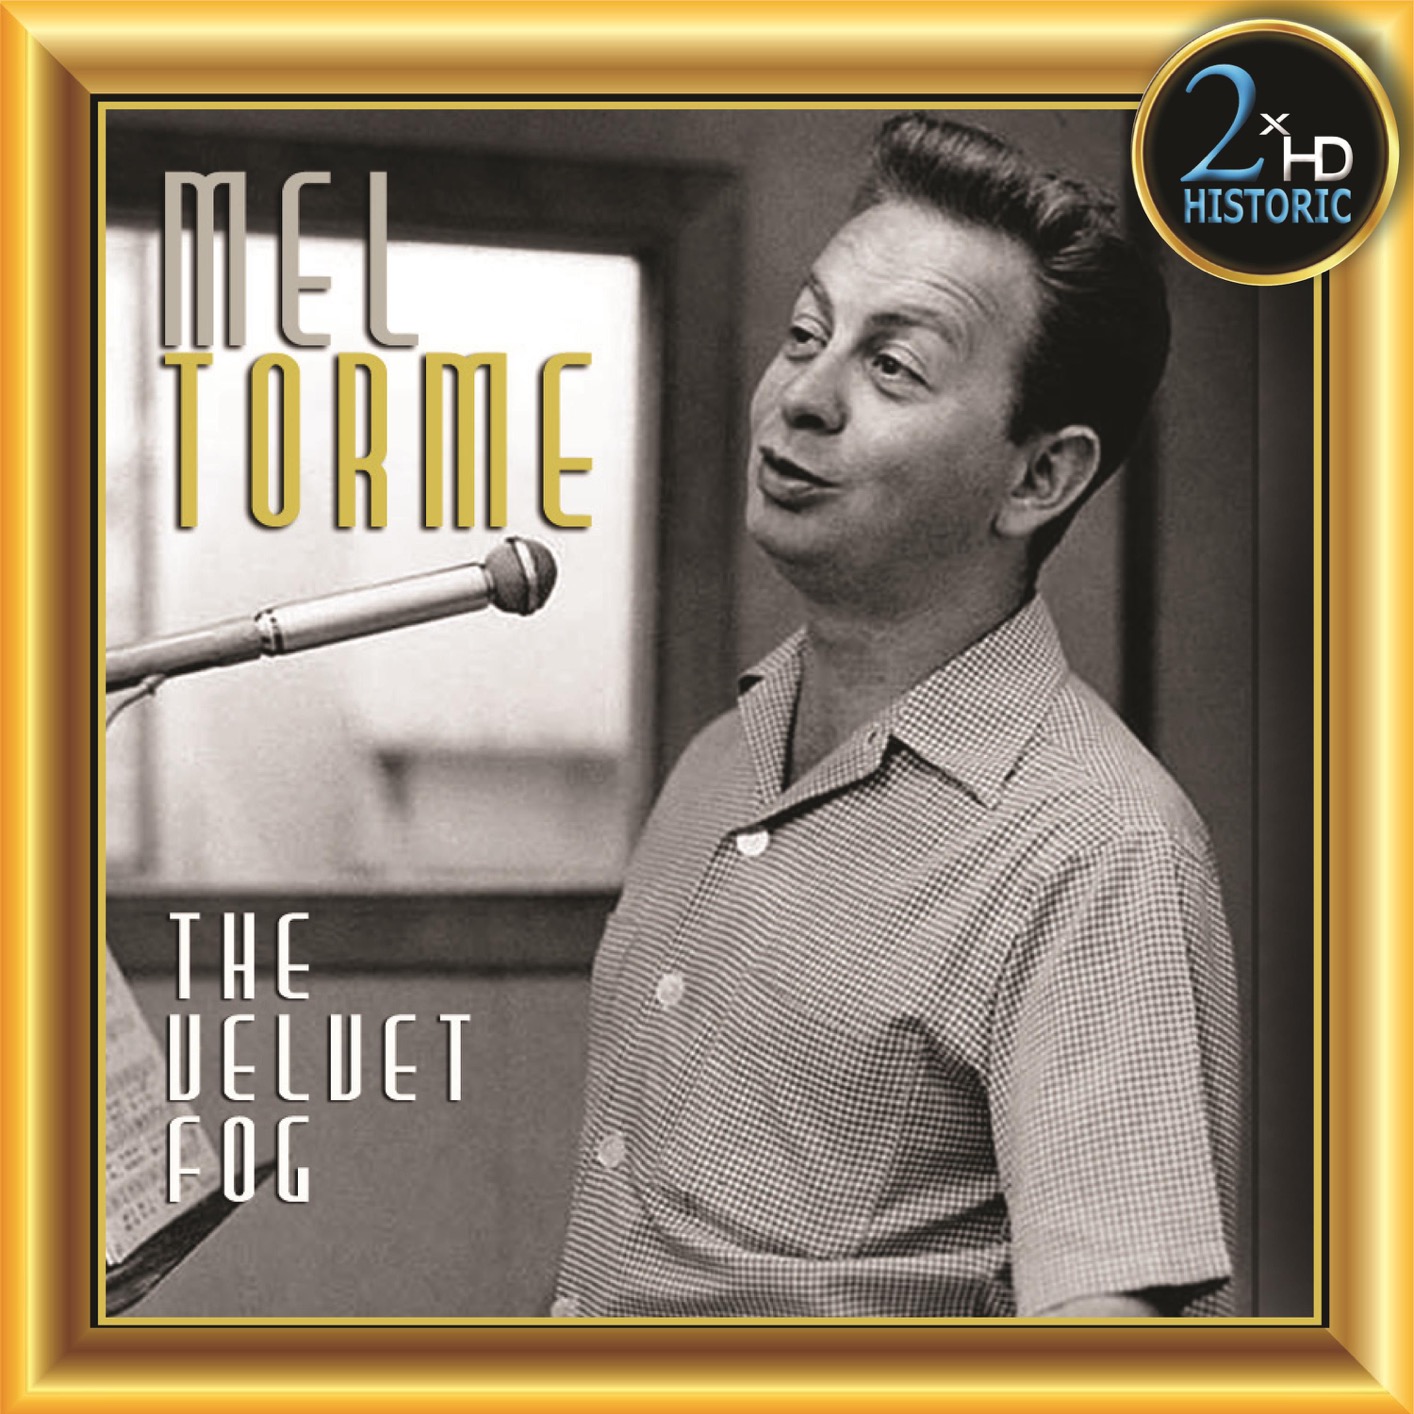 Mel Tormé – The Velvet Fog (Remastered) (2019) [FLAC 24bit/192kHz]